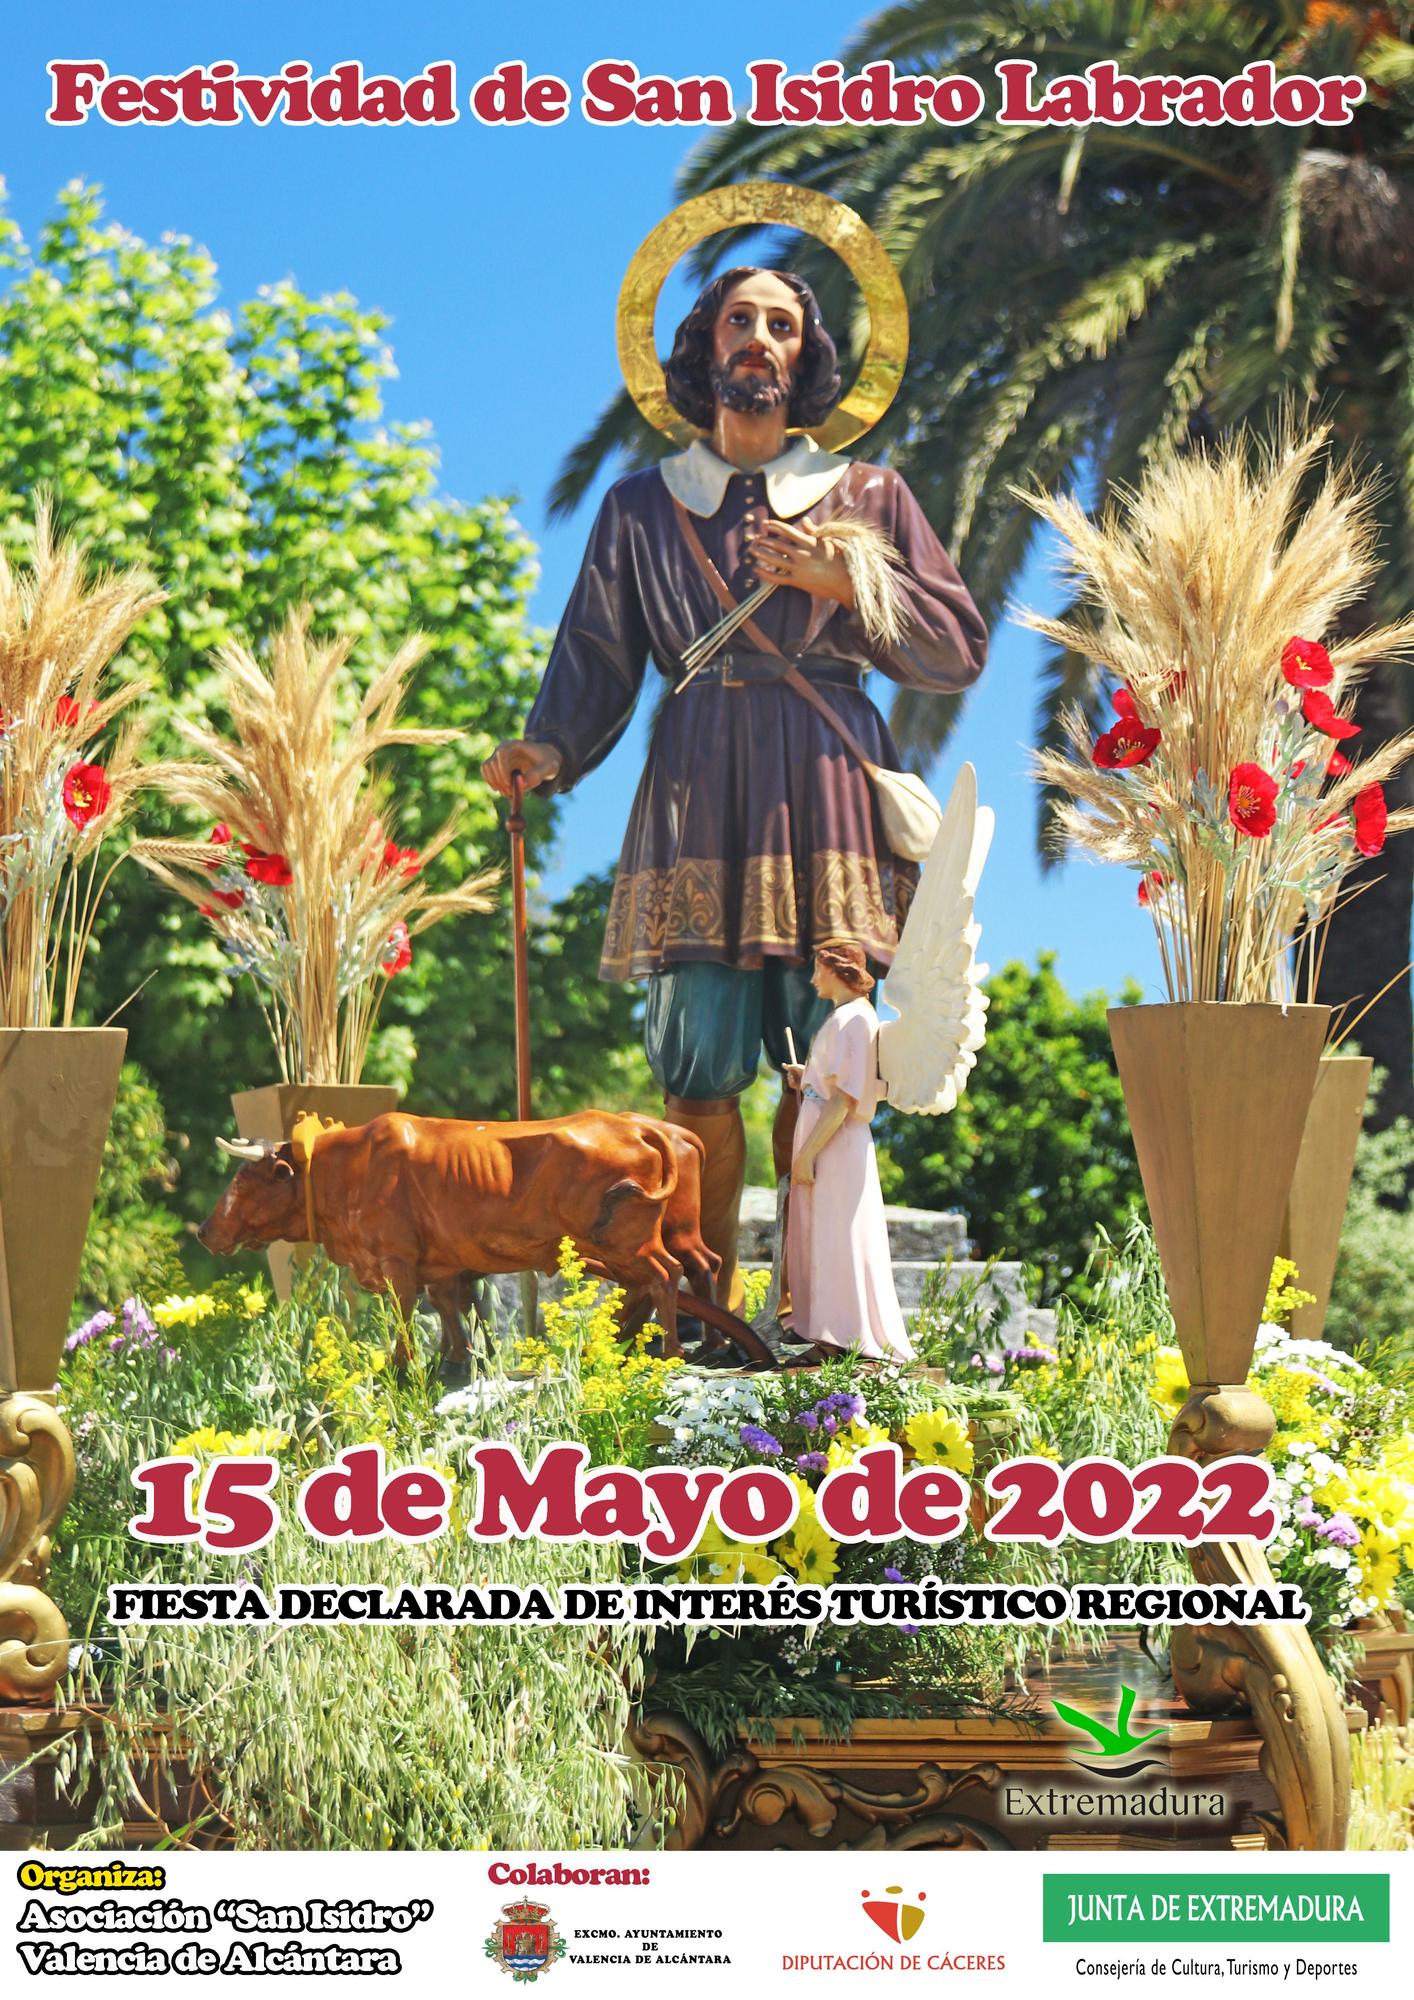 Cartel de la Festividad de San Isidro Labrador 2022 en Valencia de Alcántara.